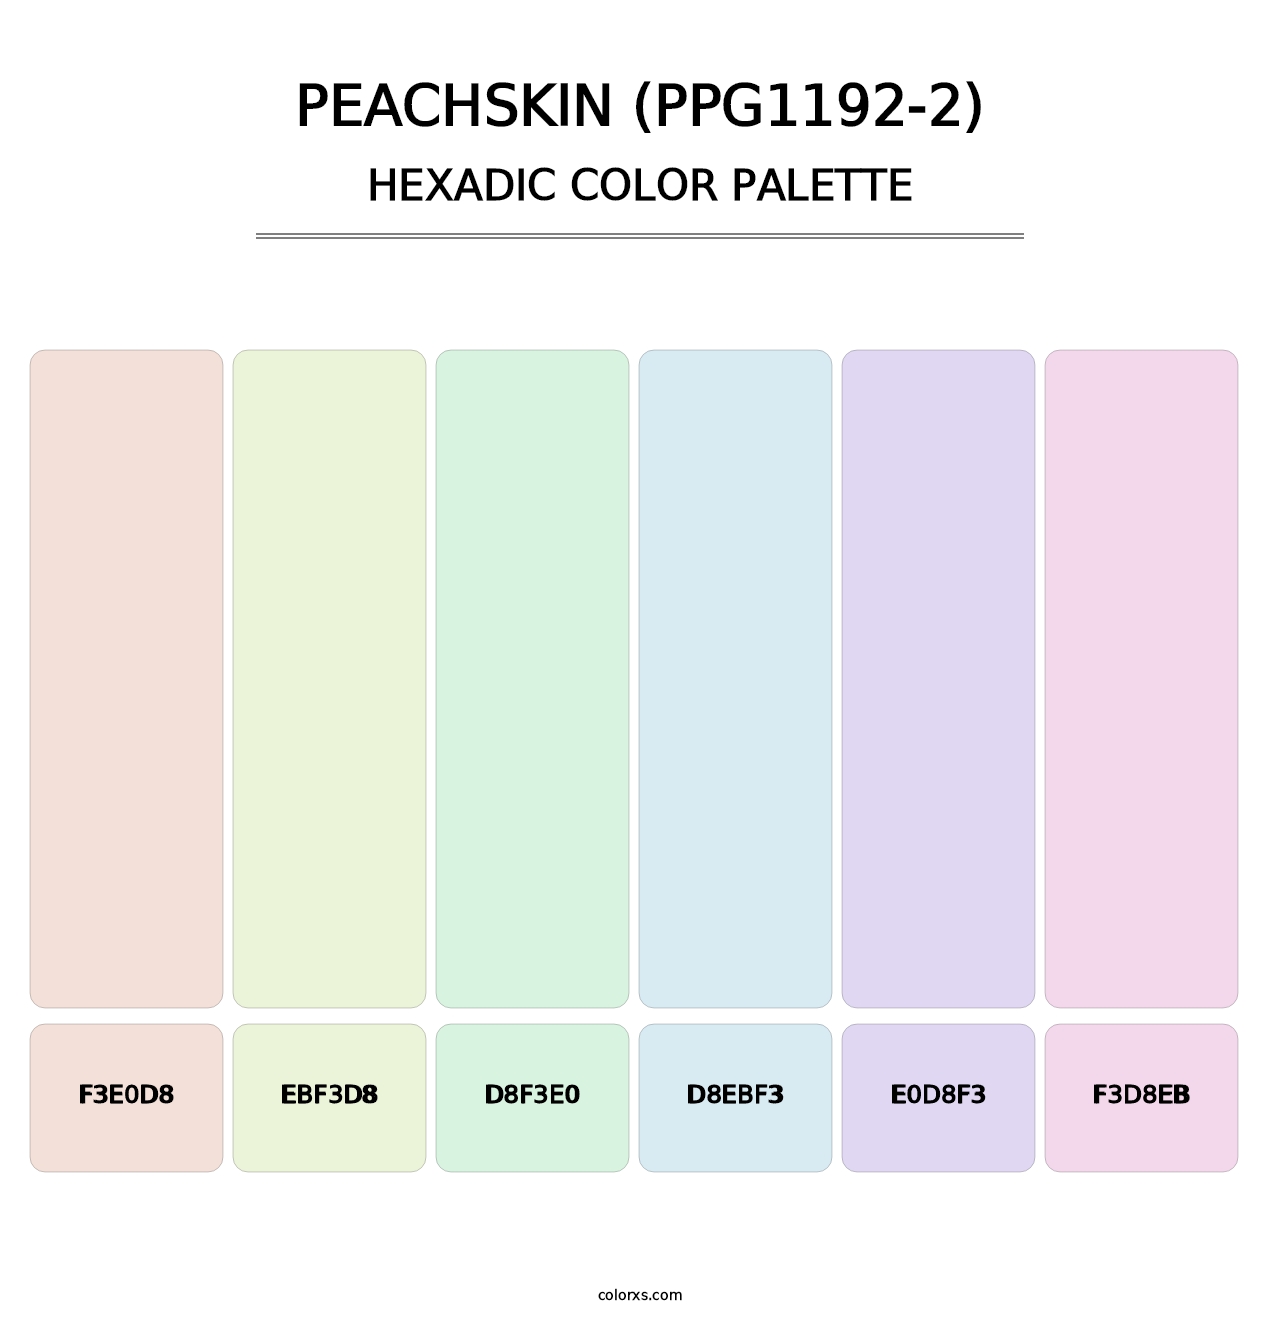 Peachskin (PPG1192-2) - Hexadic Color Palette